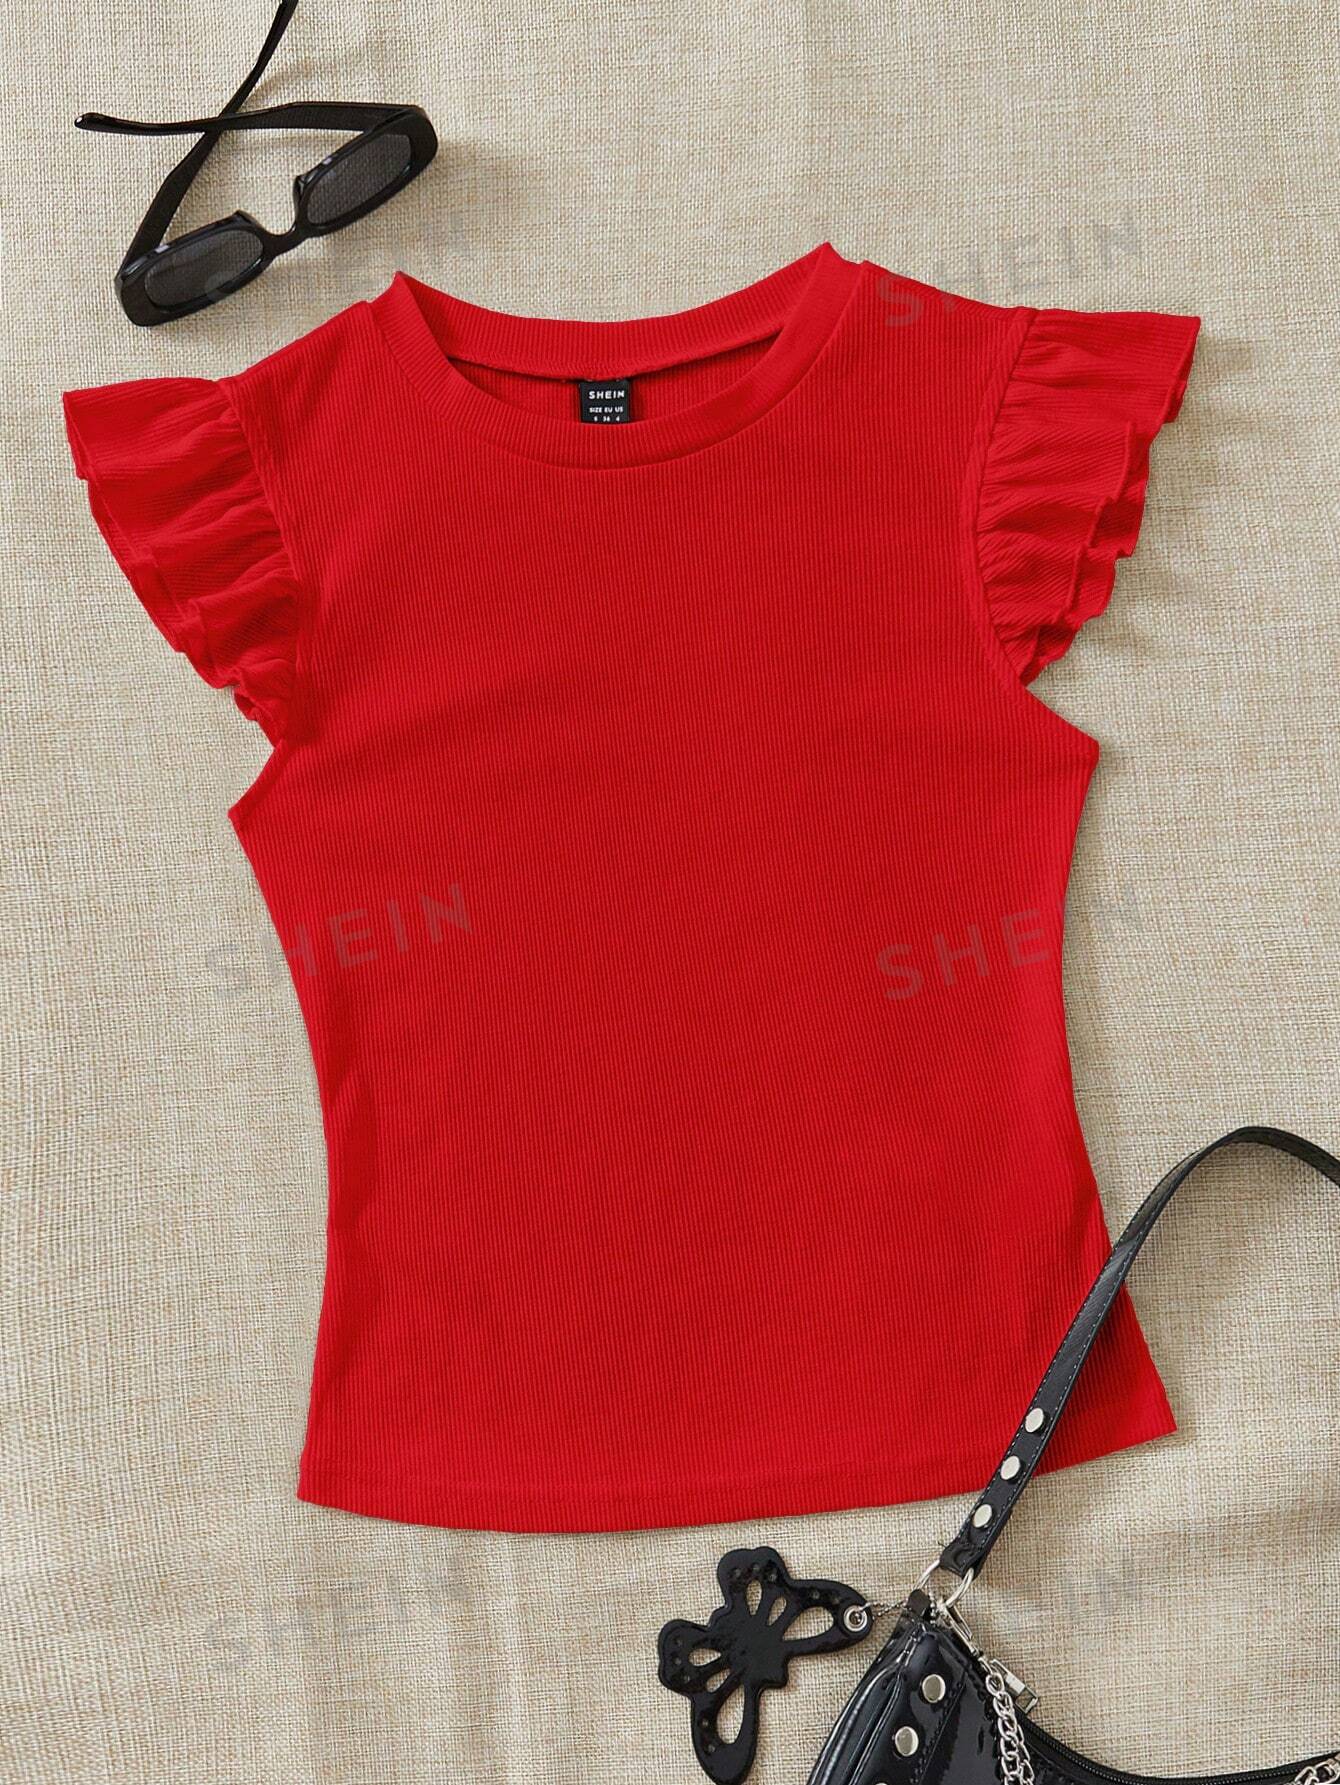 SHEIN WYWH трикотажная однотонная женская футболка с круглым вырезом и короткими рукавами, красный women shiny belly dancing top